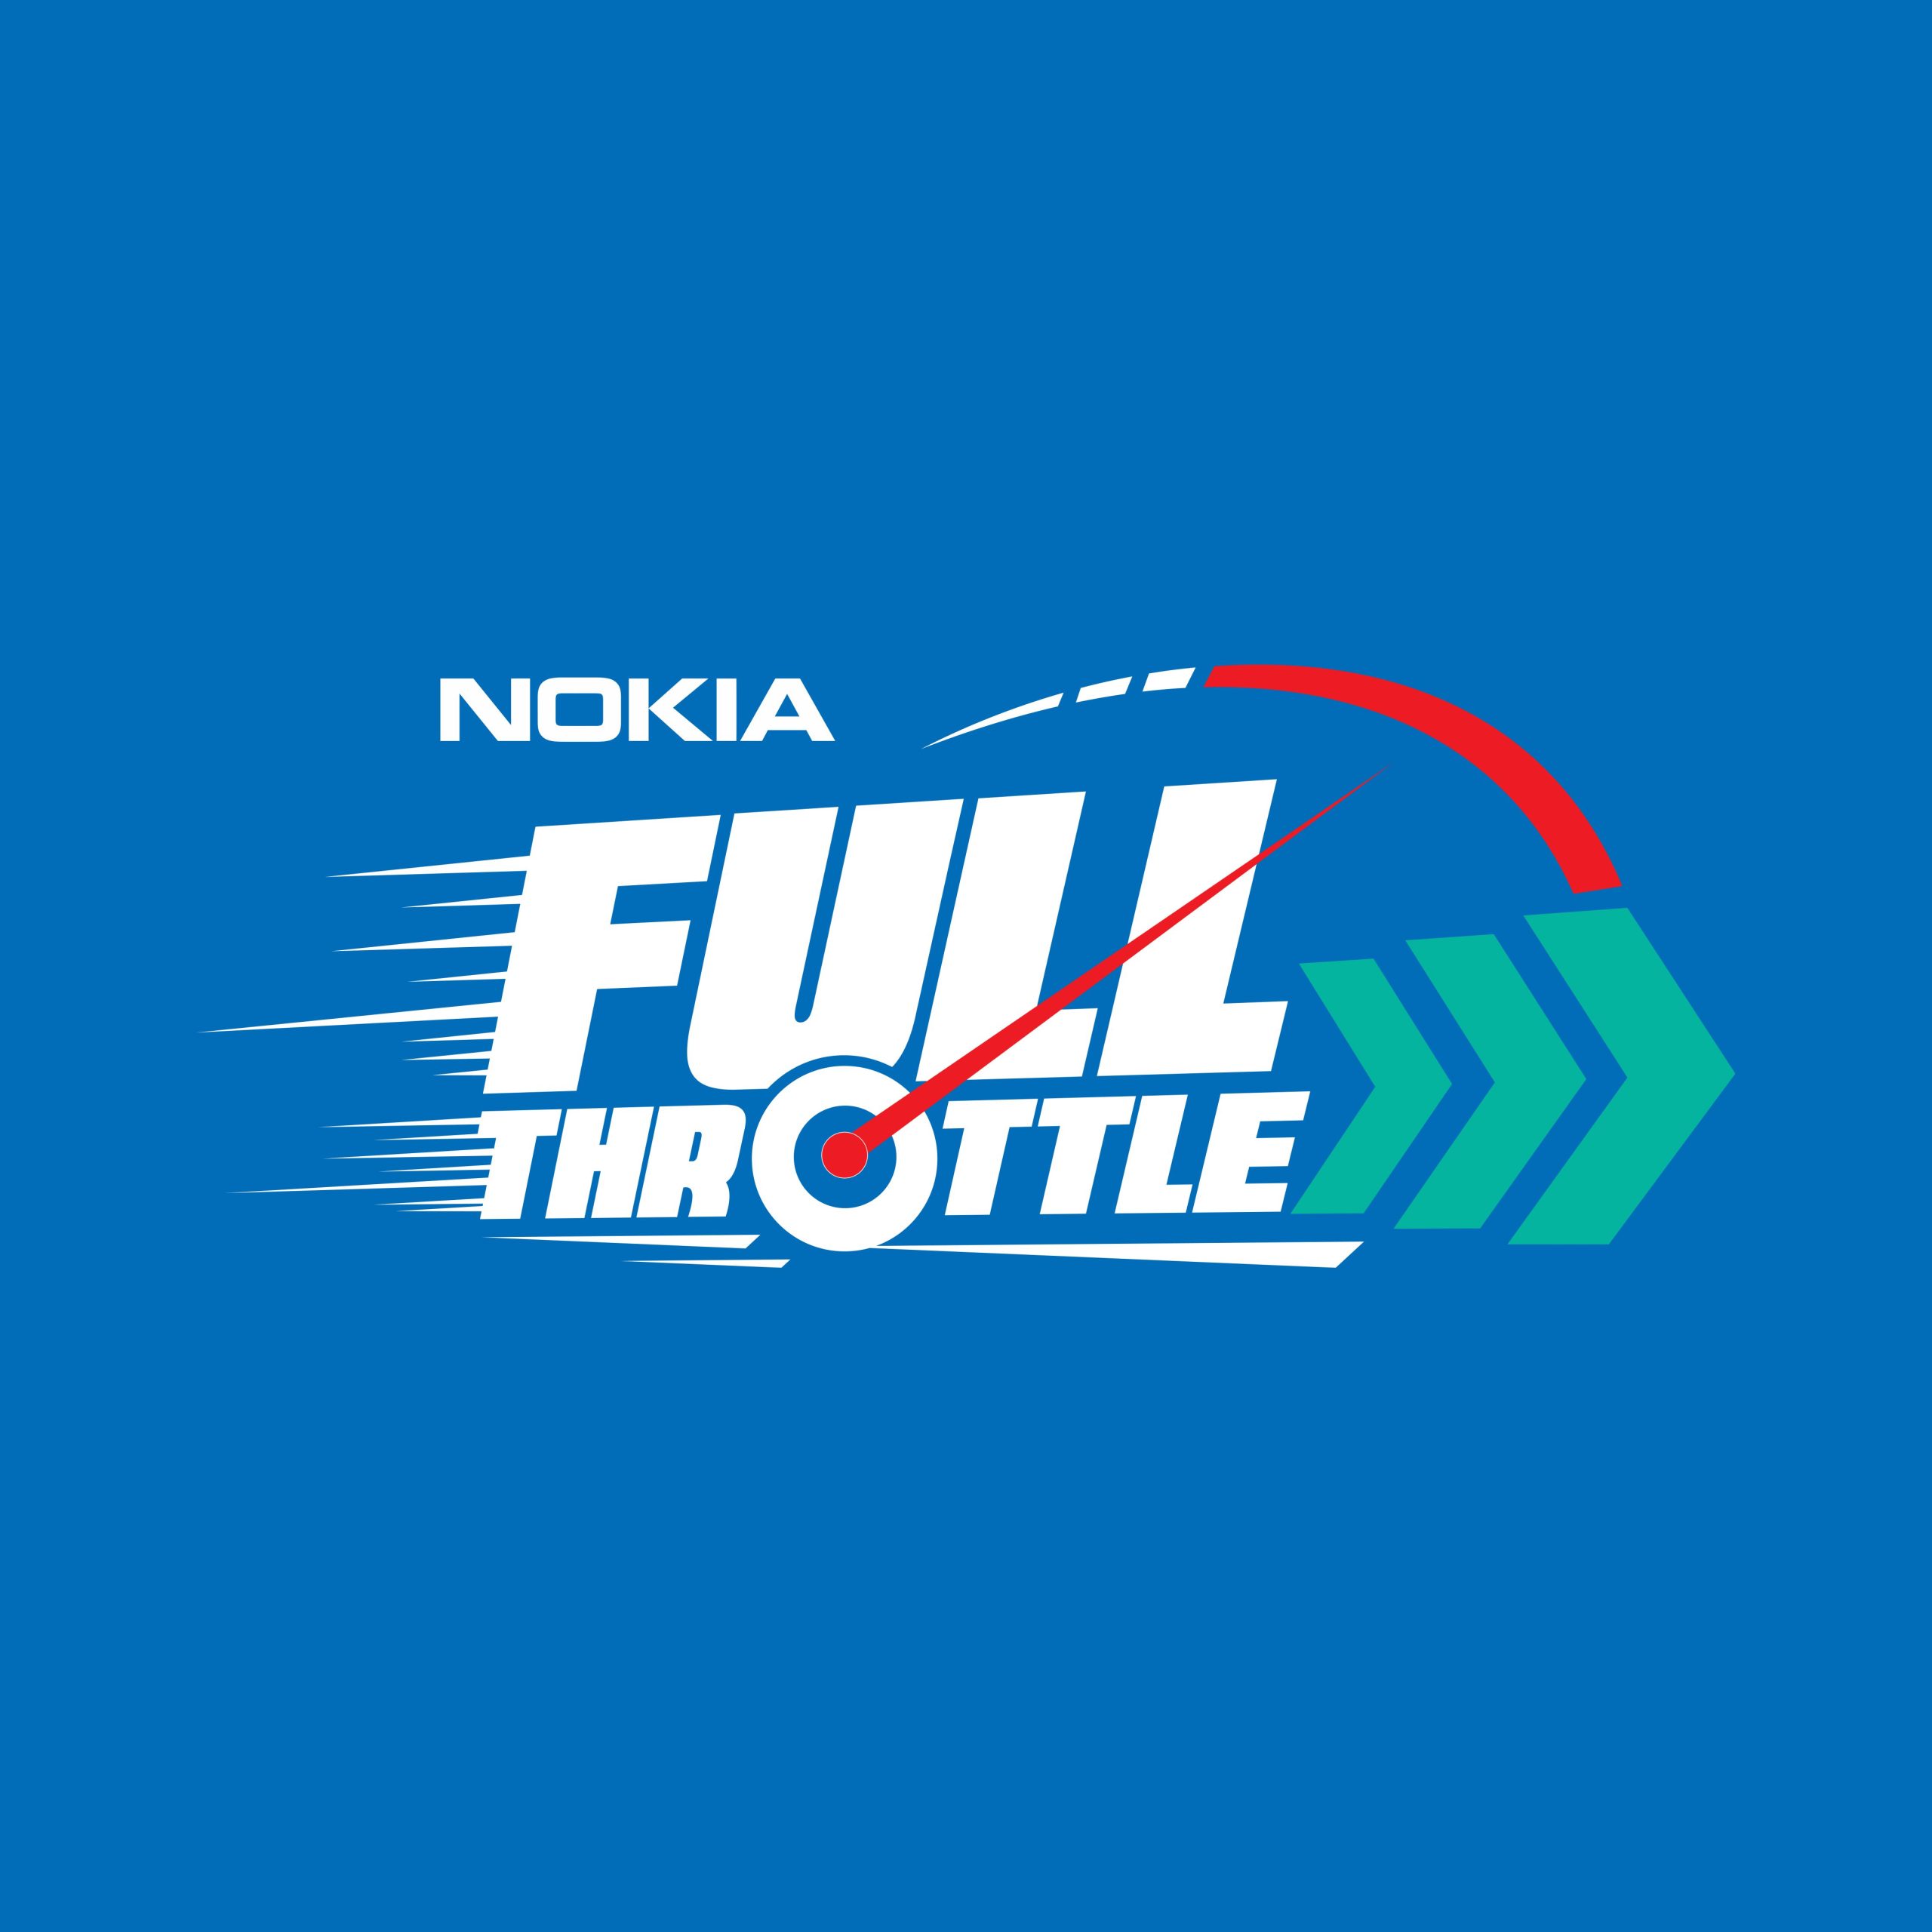 Nokia Full Throttle